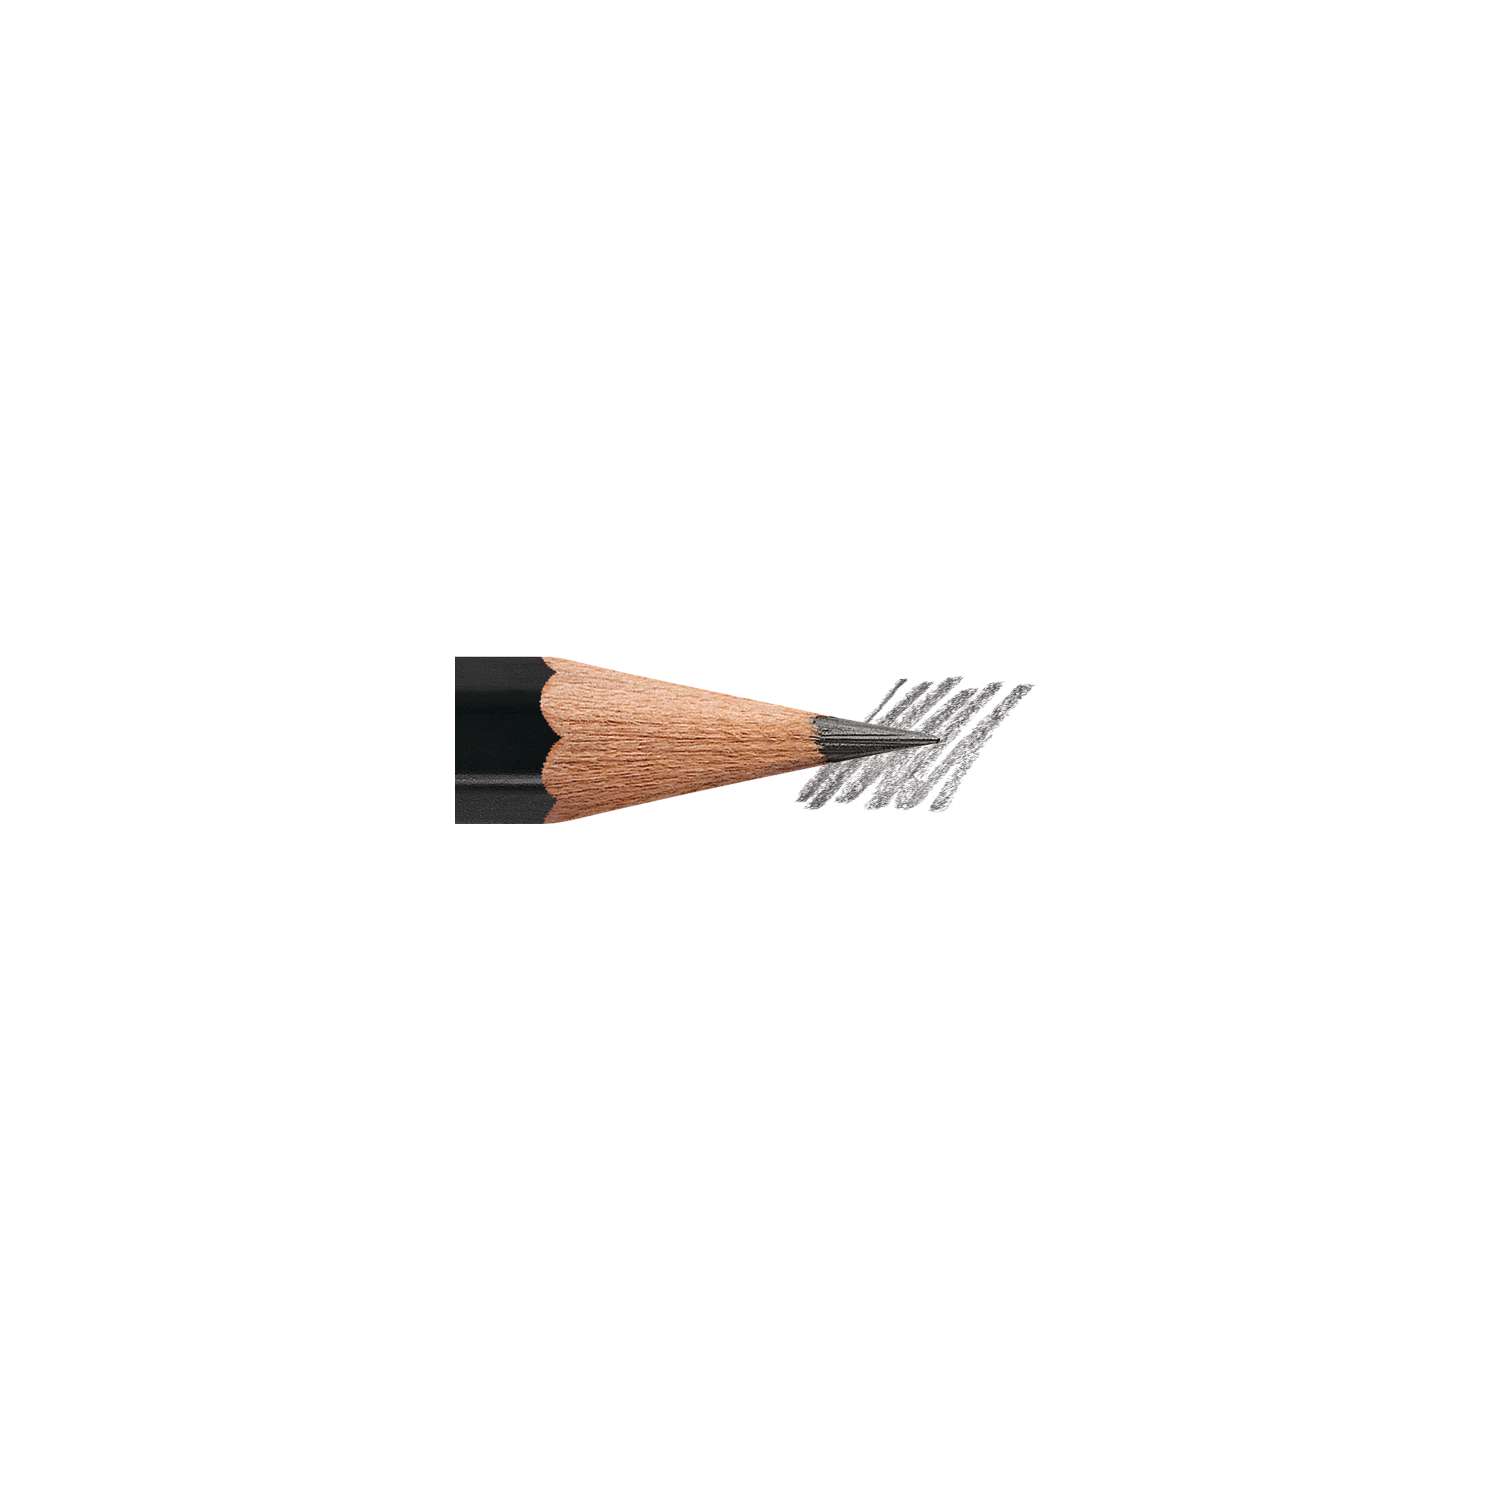 kein Anspitzen nötig mit abnehmbarer Kappe zum Radieren Bleistift mit Radierkappe im Dinosaurier Design Stylex 44152 sortiert in 2 Ausführungen mit 11 Wechselminen 